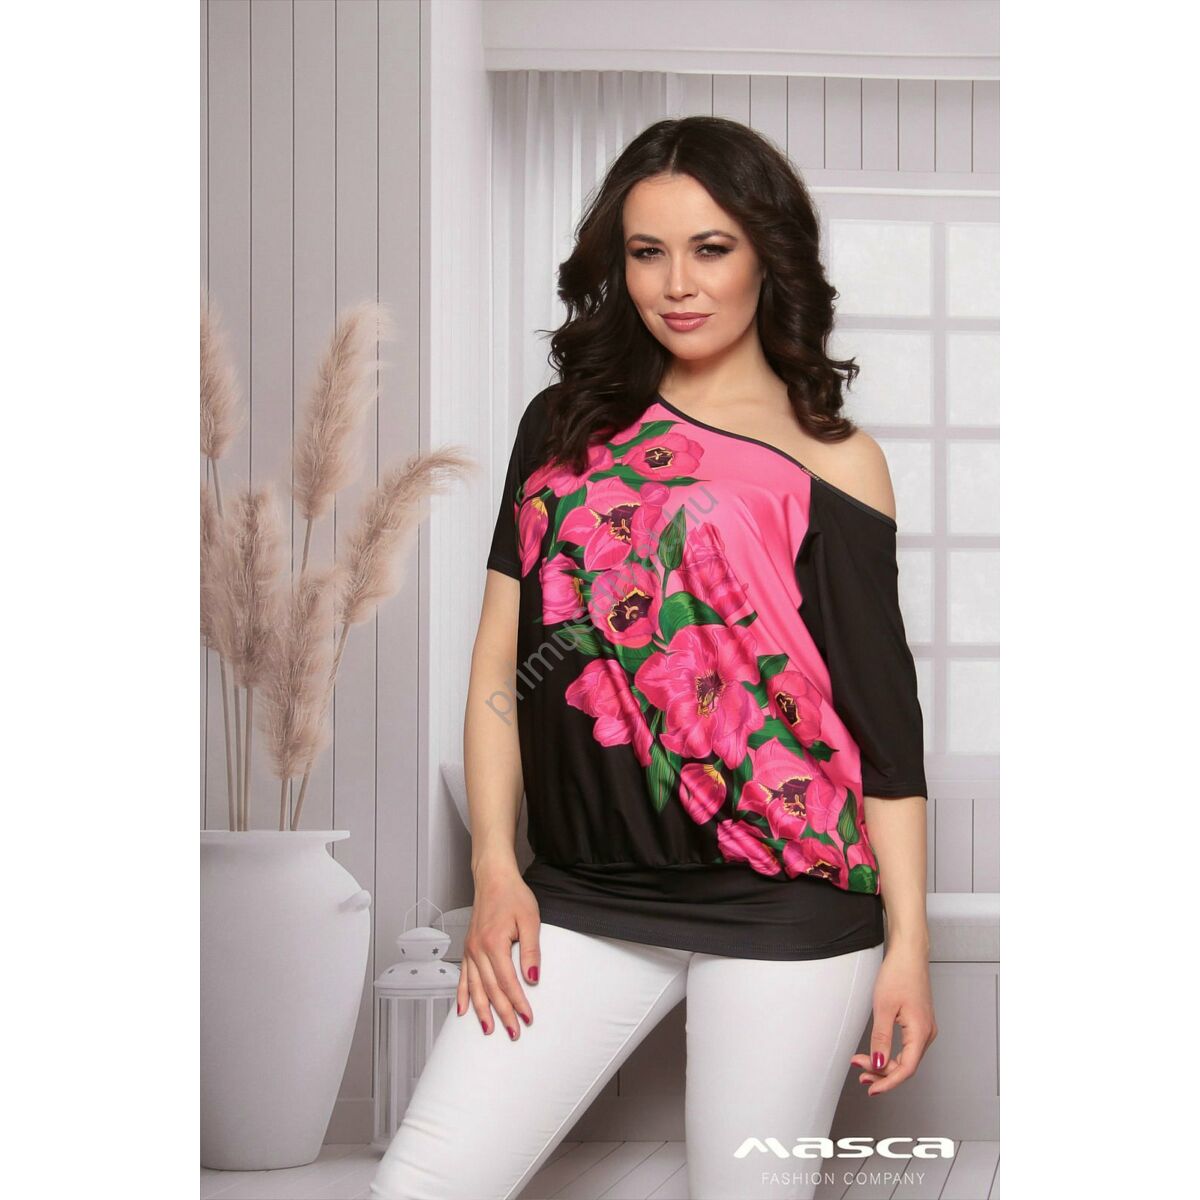 Masca Fashion vállra húzható csónaknyakú, pink virágmintás fekete rövid ujjú laza felső, csípőjén széles passzéval